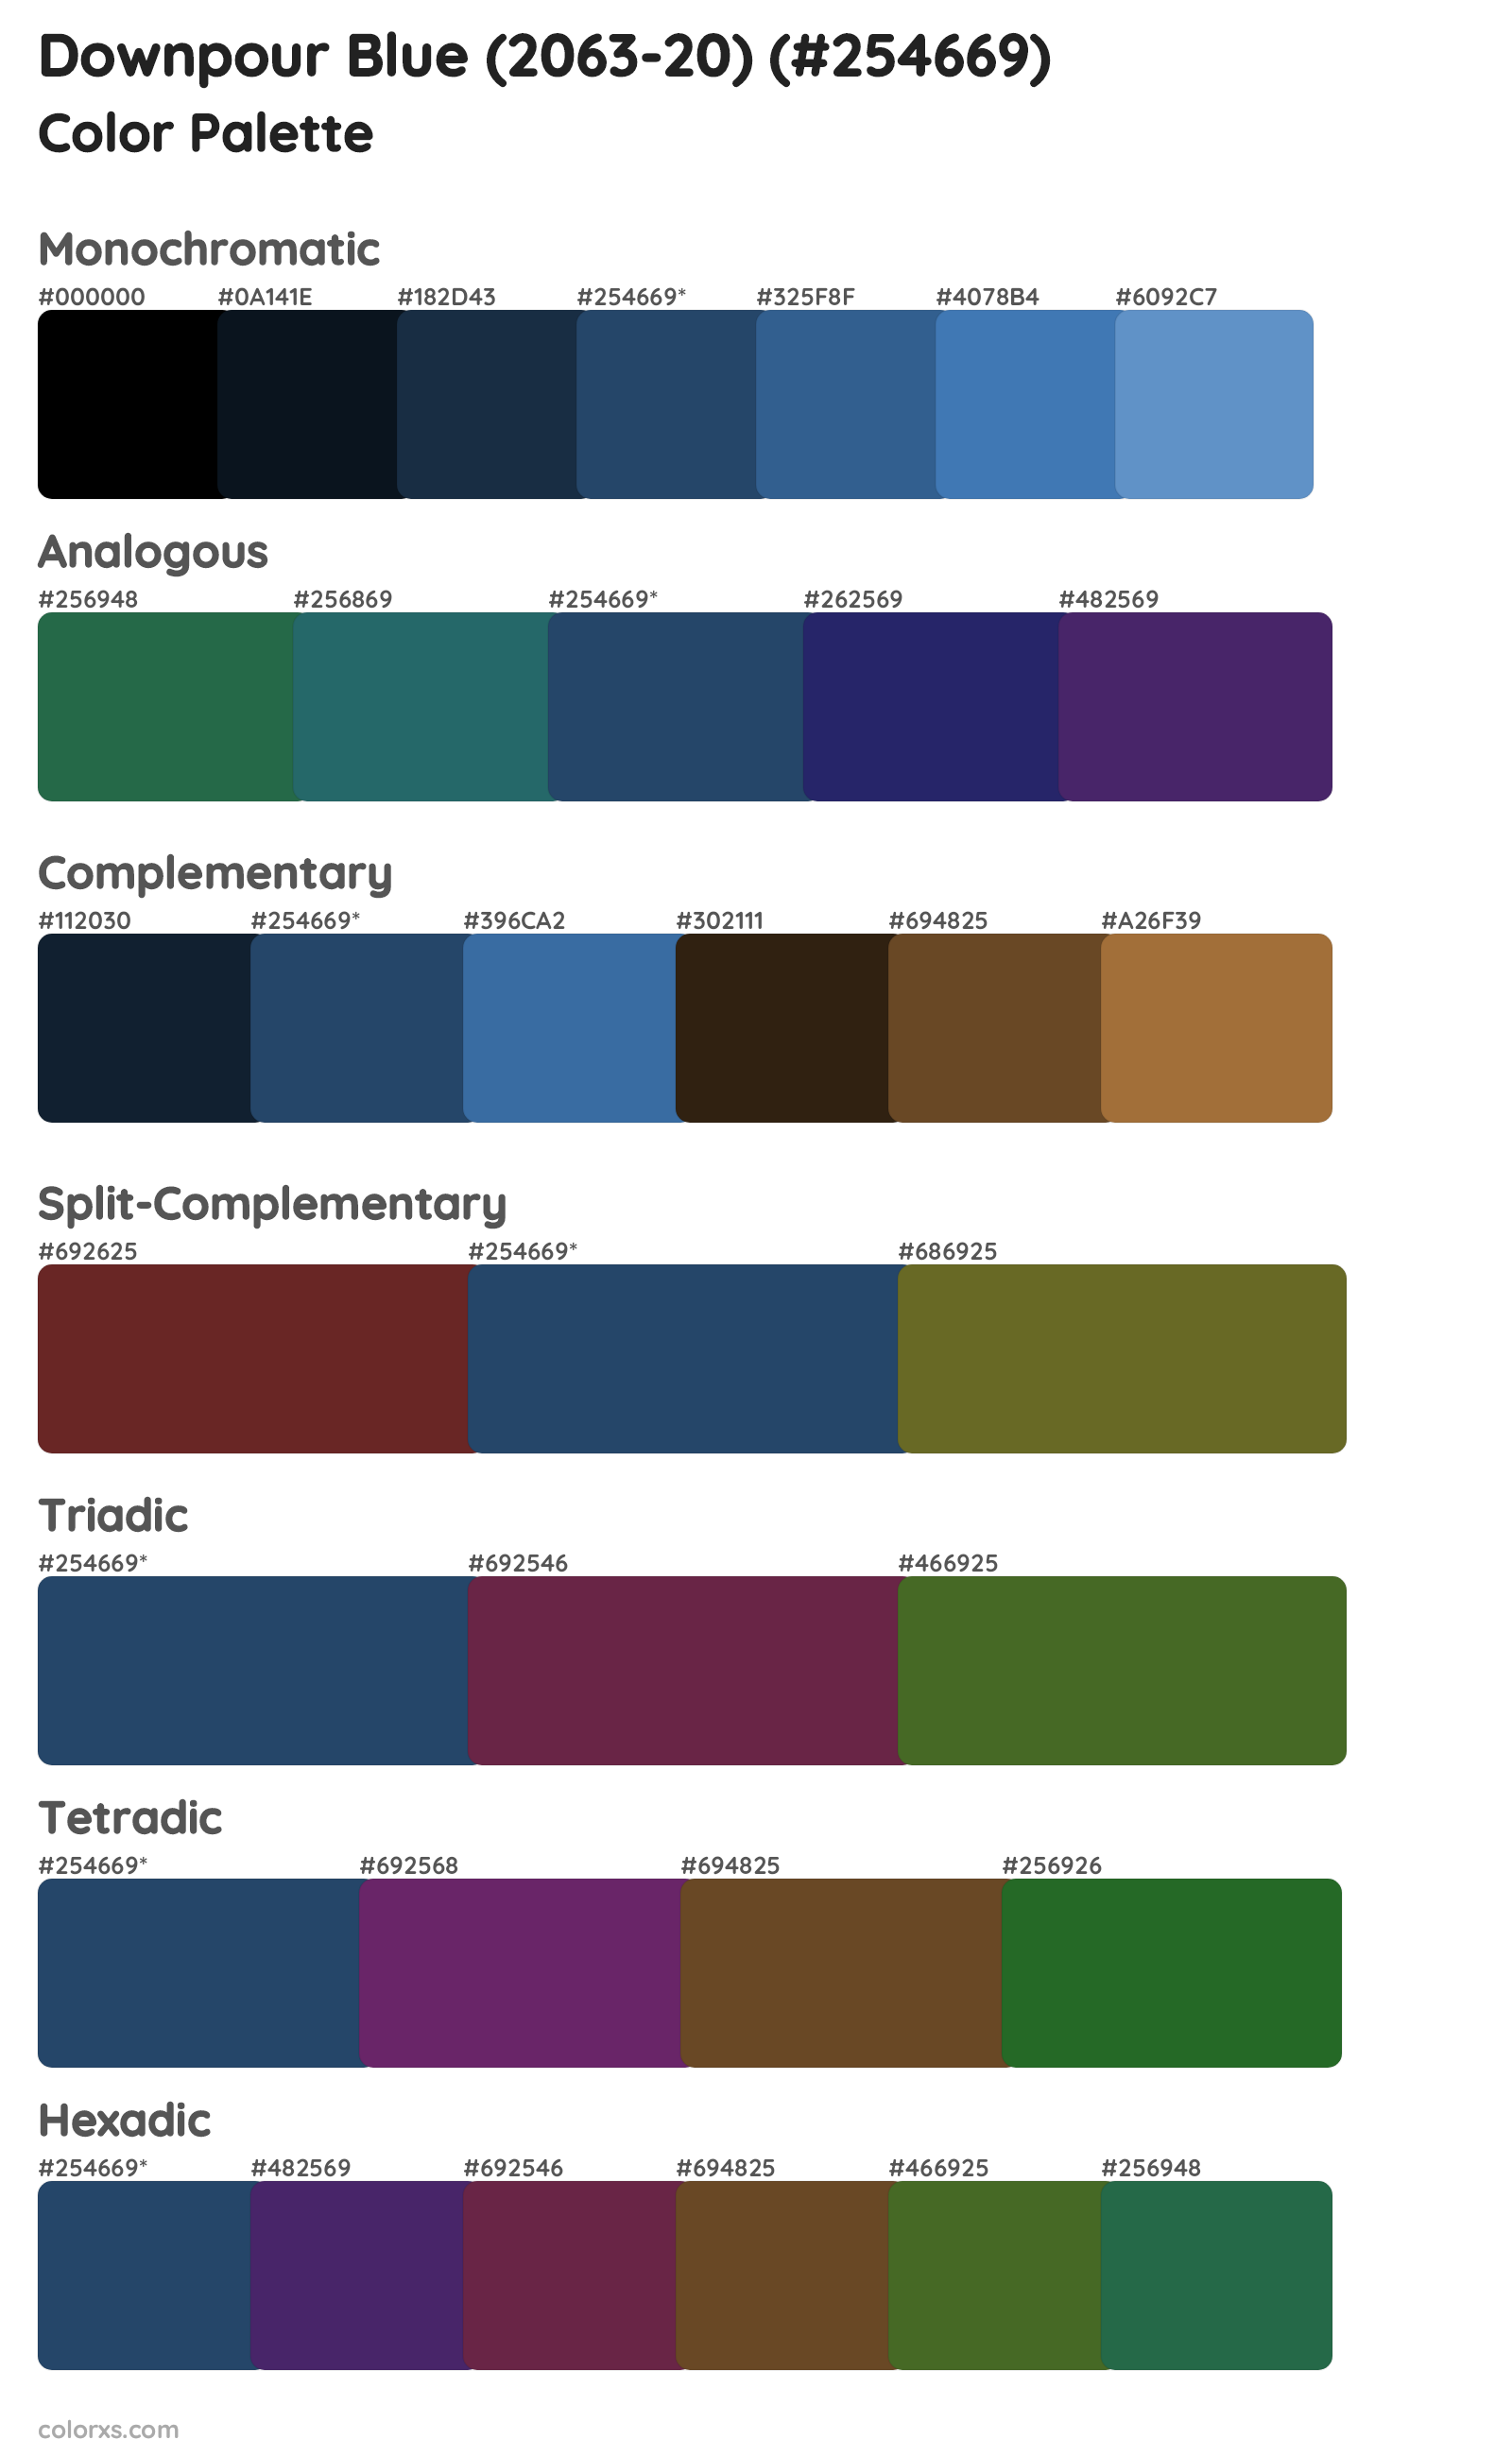 Downpour Blue (2063-20) Color Scheme Palettes